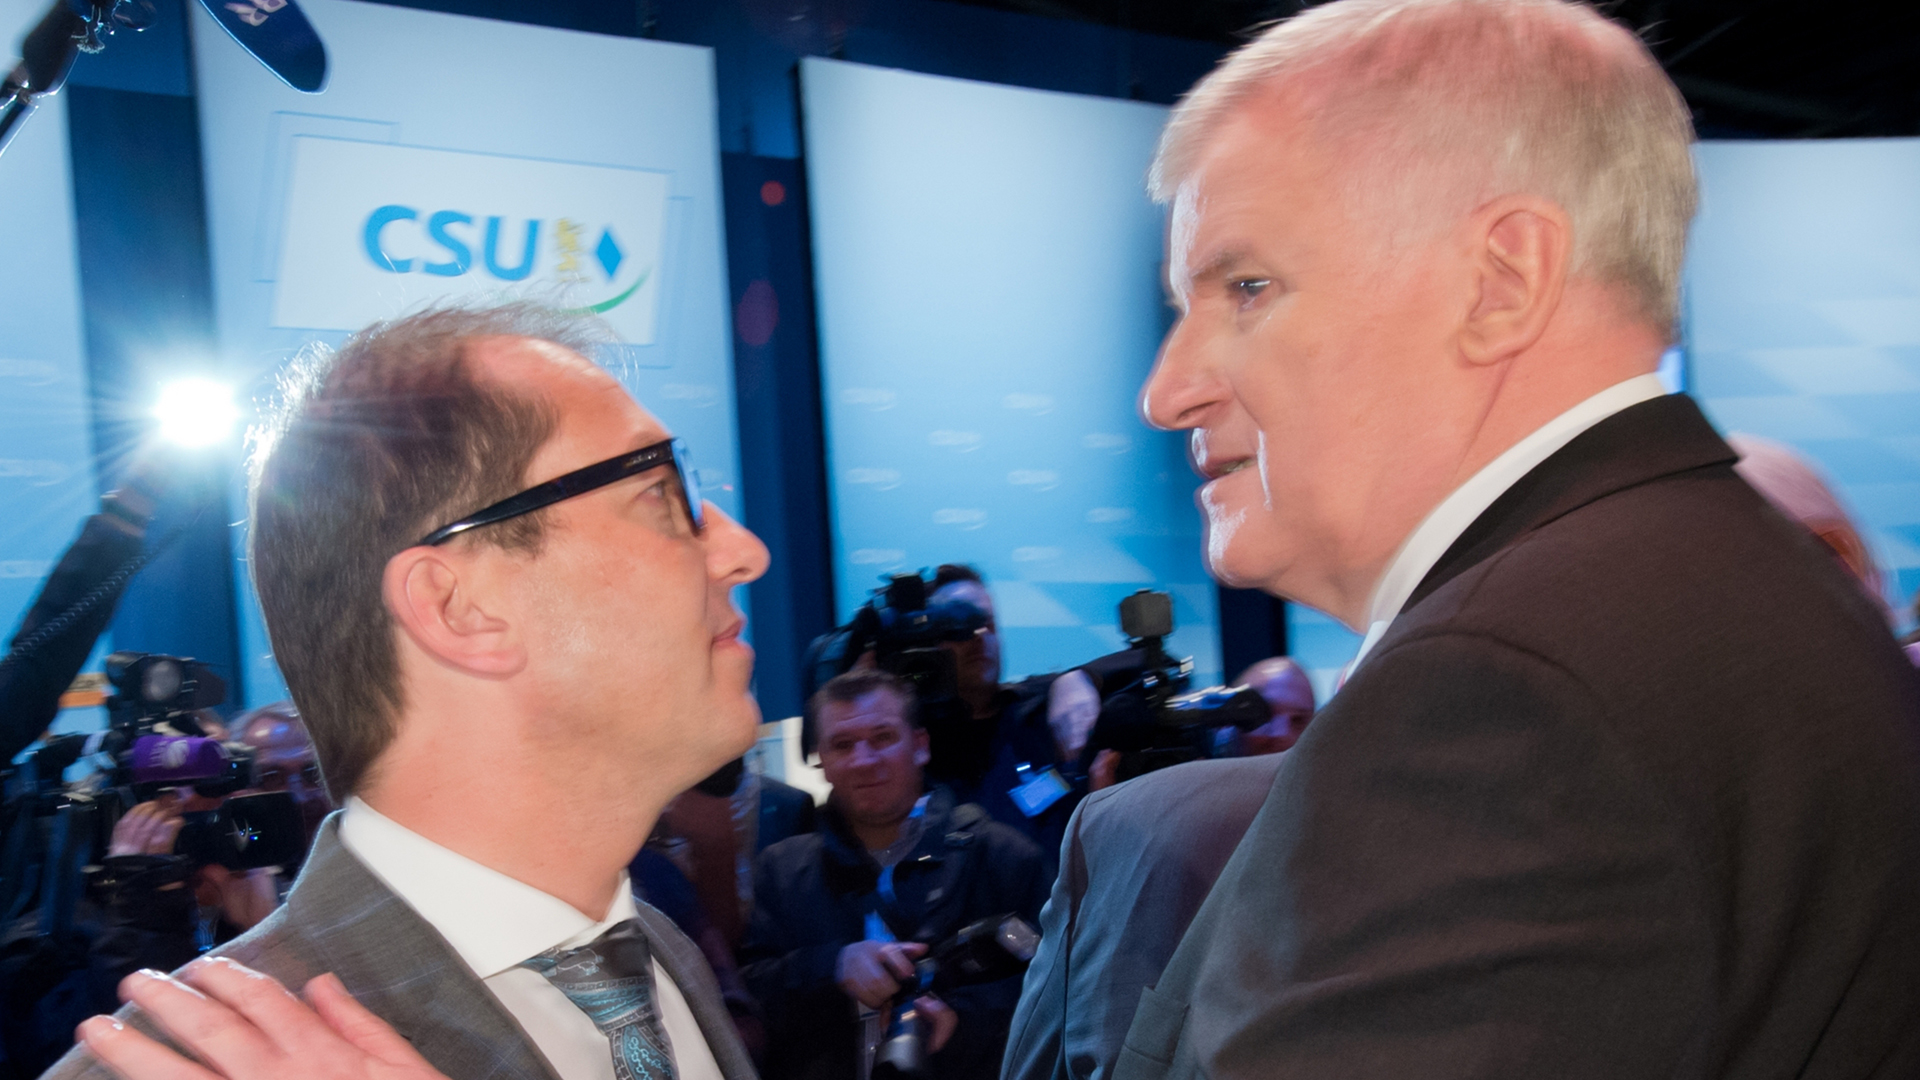 CSU-Vorsitzender Seehofer und der damalige Verkehrsminister Dobrindt im November 2013 auf dem CSU-Parteitag